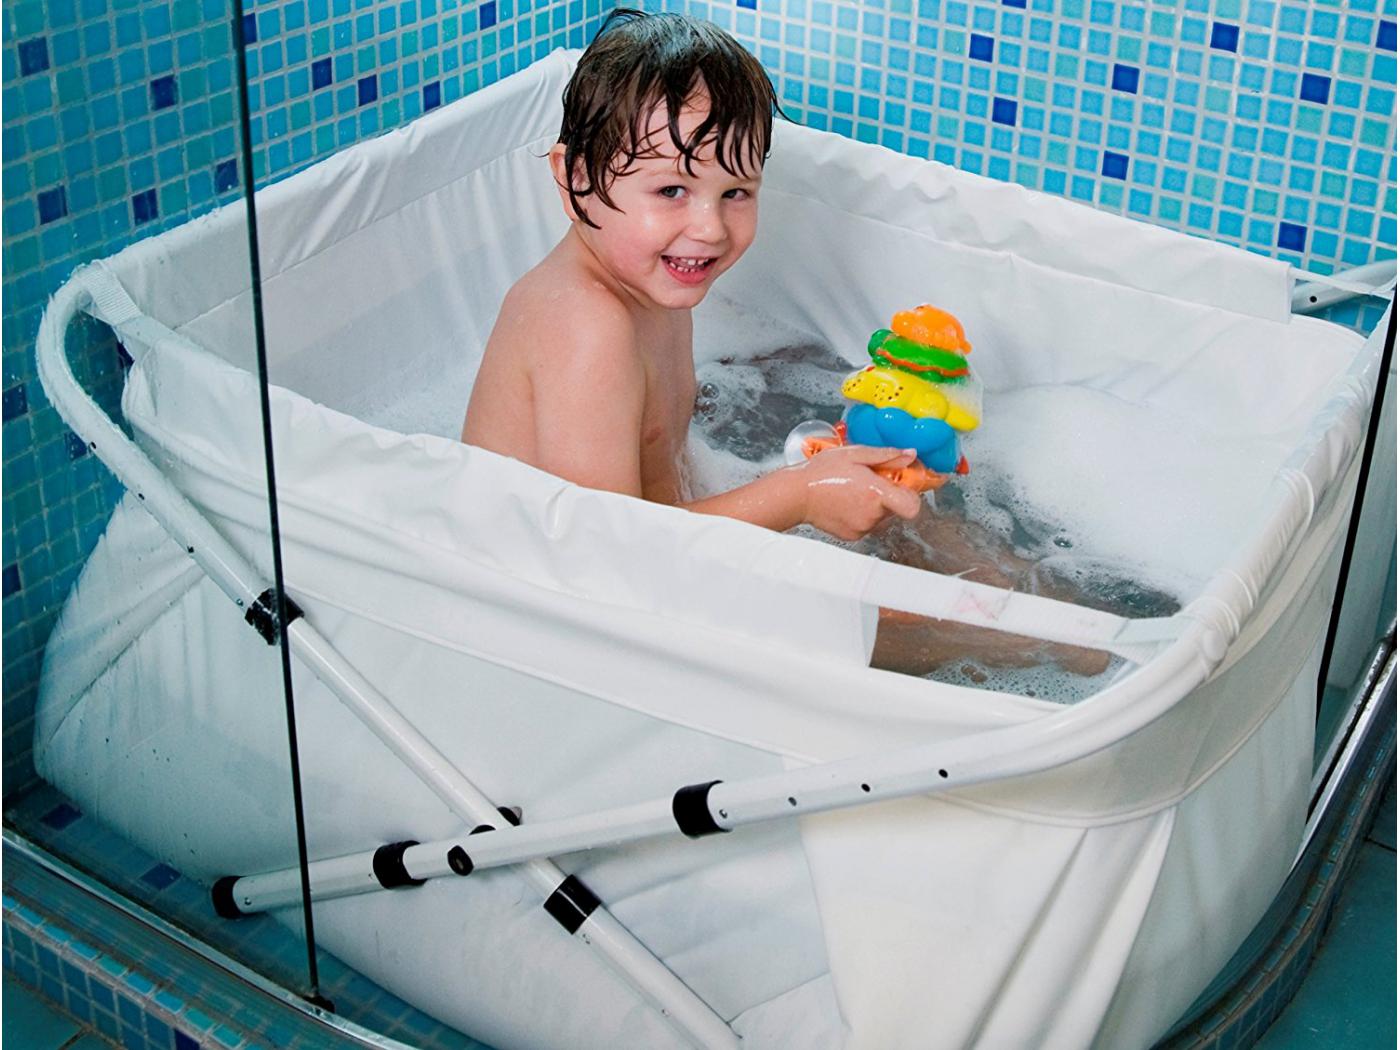 Baignoire pliable pour bébé, baignoire portable pour tout-petits, baignoire  pliable pour enfants pour la douche